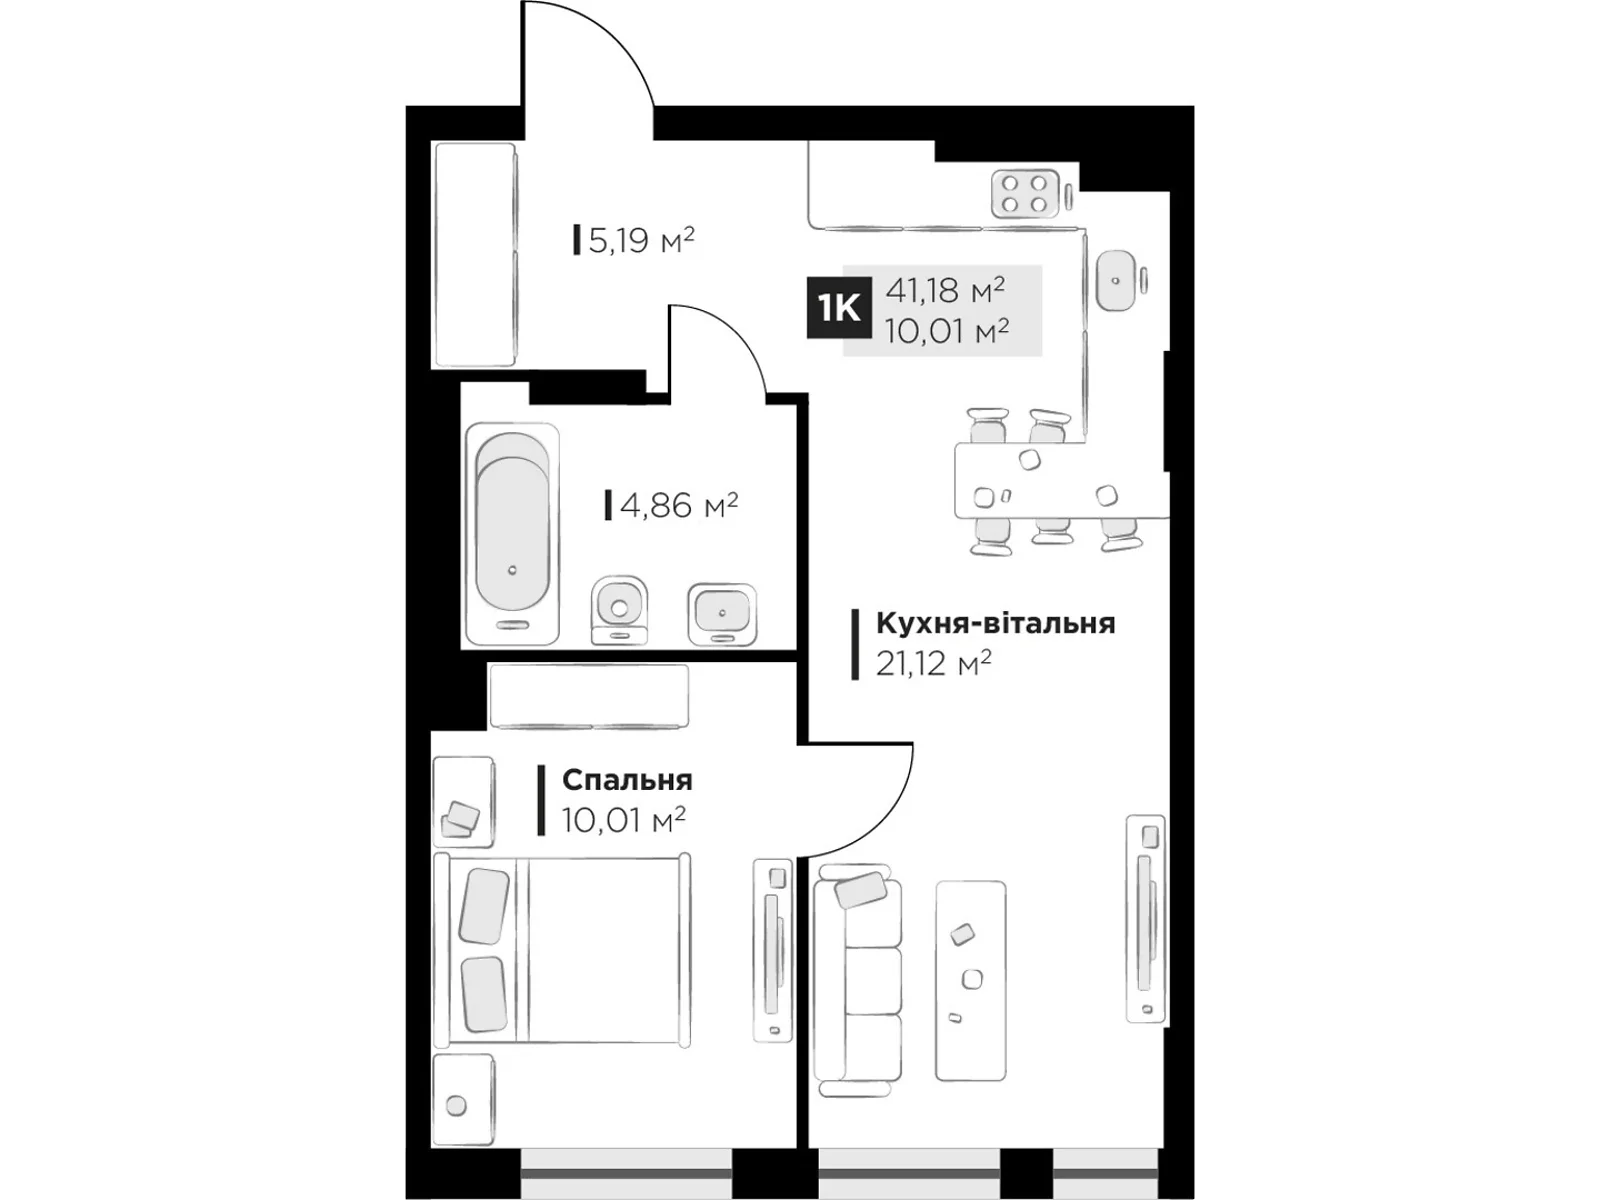 Продається 1-кімнатна квартира 41.18 кв. м у Винниках